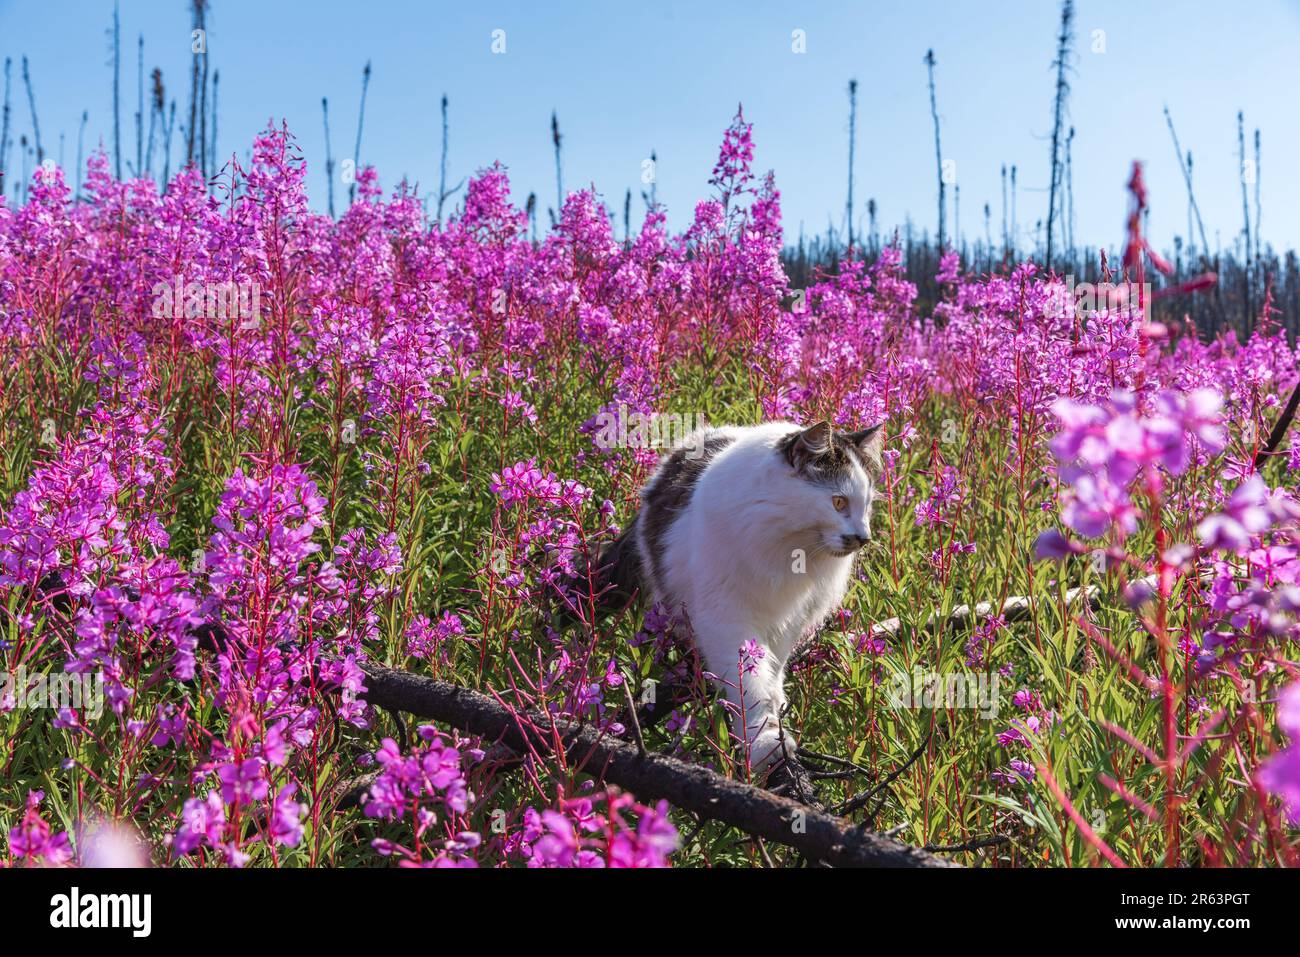 Im Sommer wandern Sie in Nordkanada auf einem Feld mit rosafarbenen Feuerweed-Blumen und genießen die wunderschöne pinkfarbene, lila Landschaft um die Katze Stockfoto